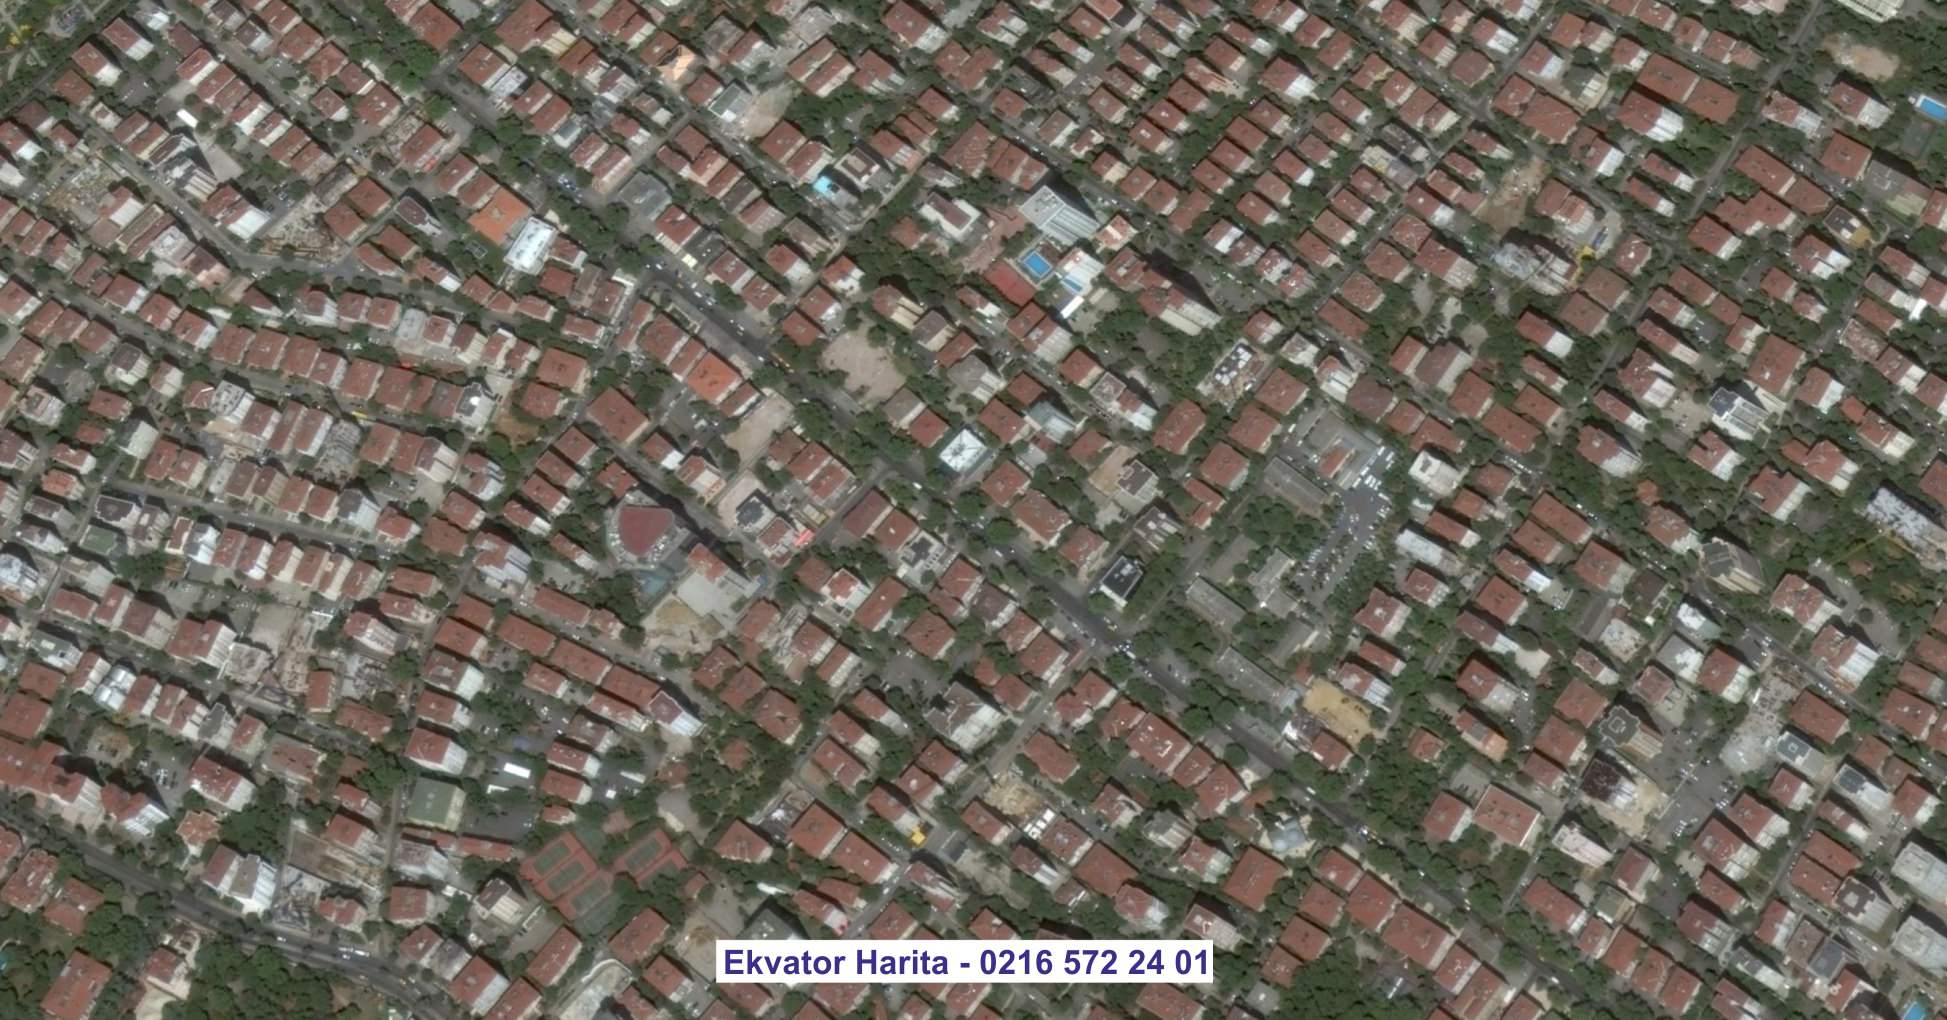 Sultanbeyli Uydu Görüntüsü Örnek Fotoğrafı